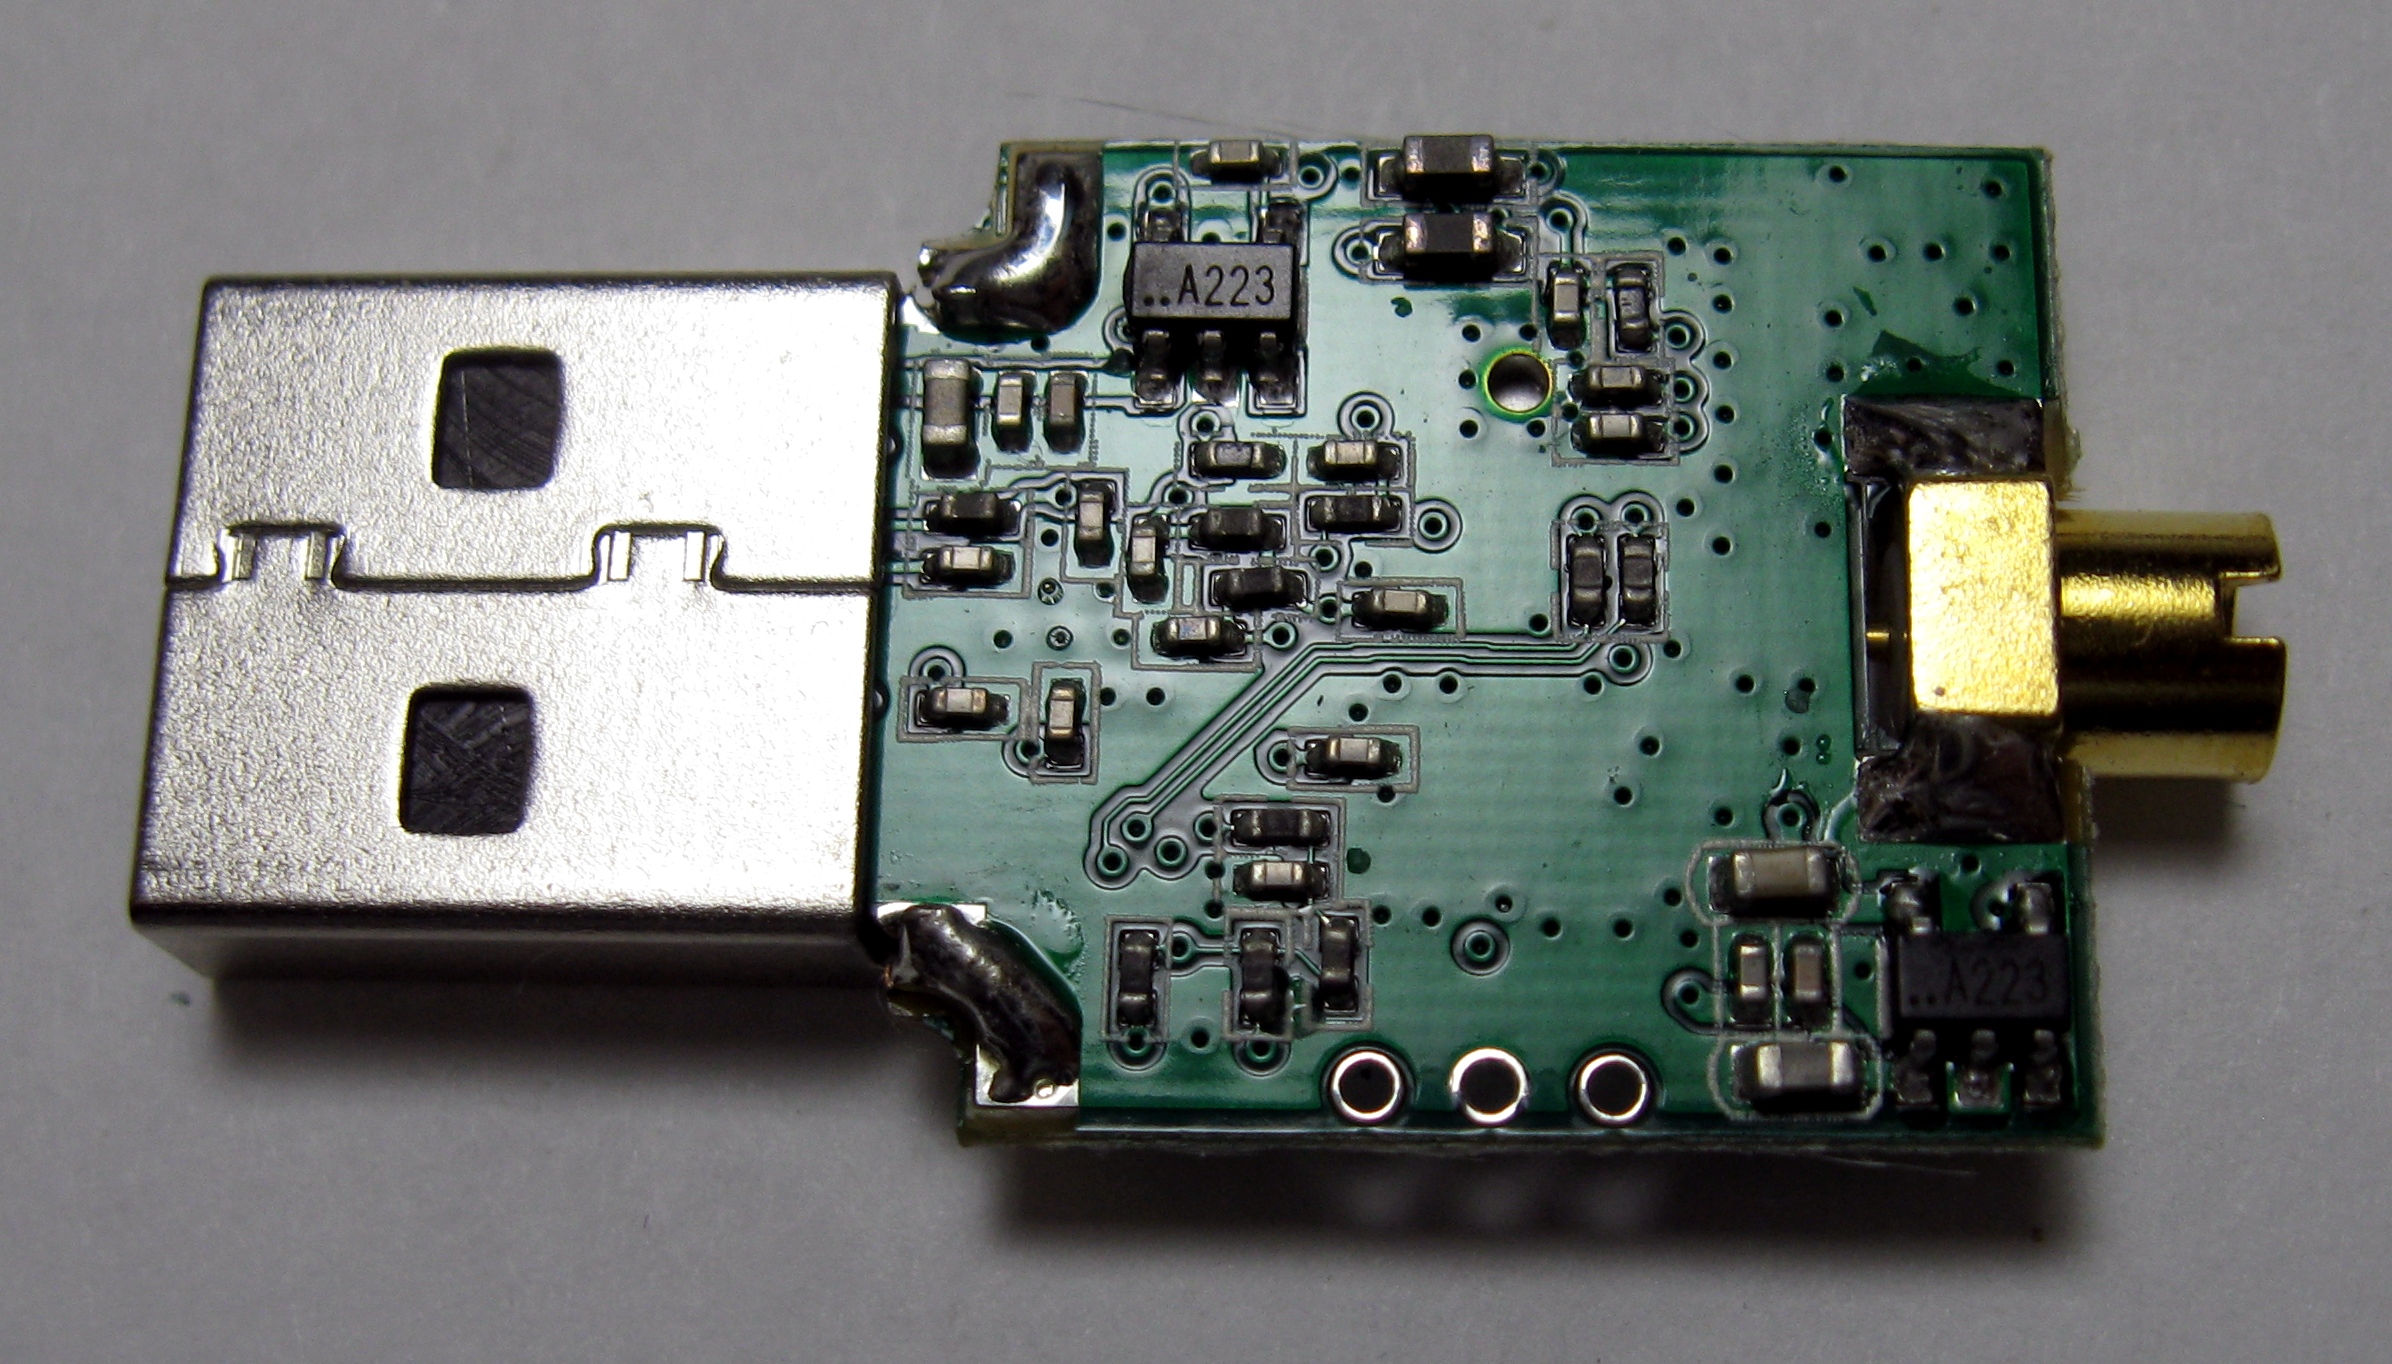 行 Realtek RT2832U 及 Rahael Micro R820T Chip Set 的 USB 手指